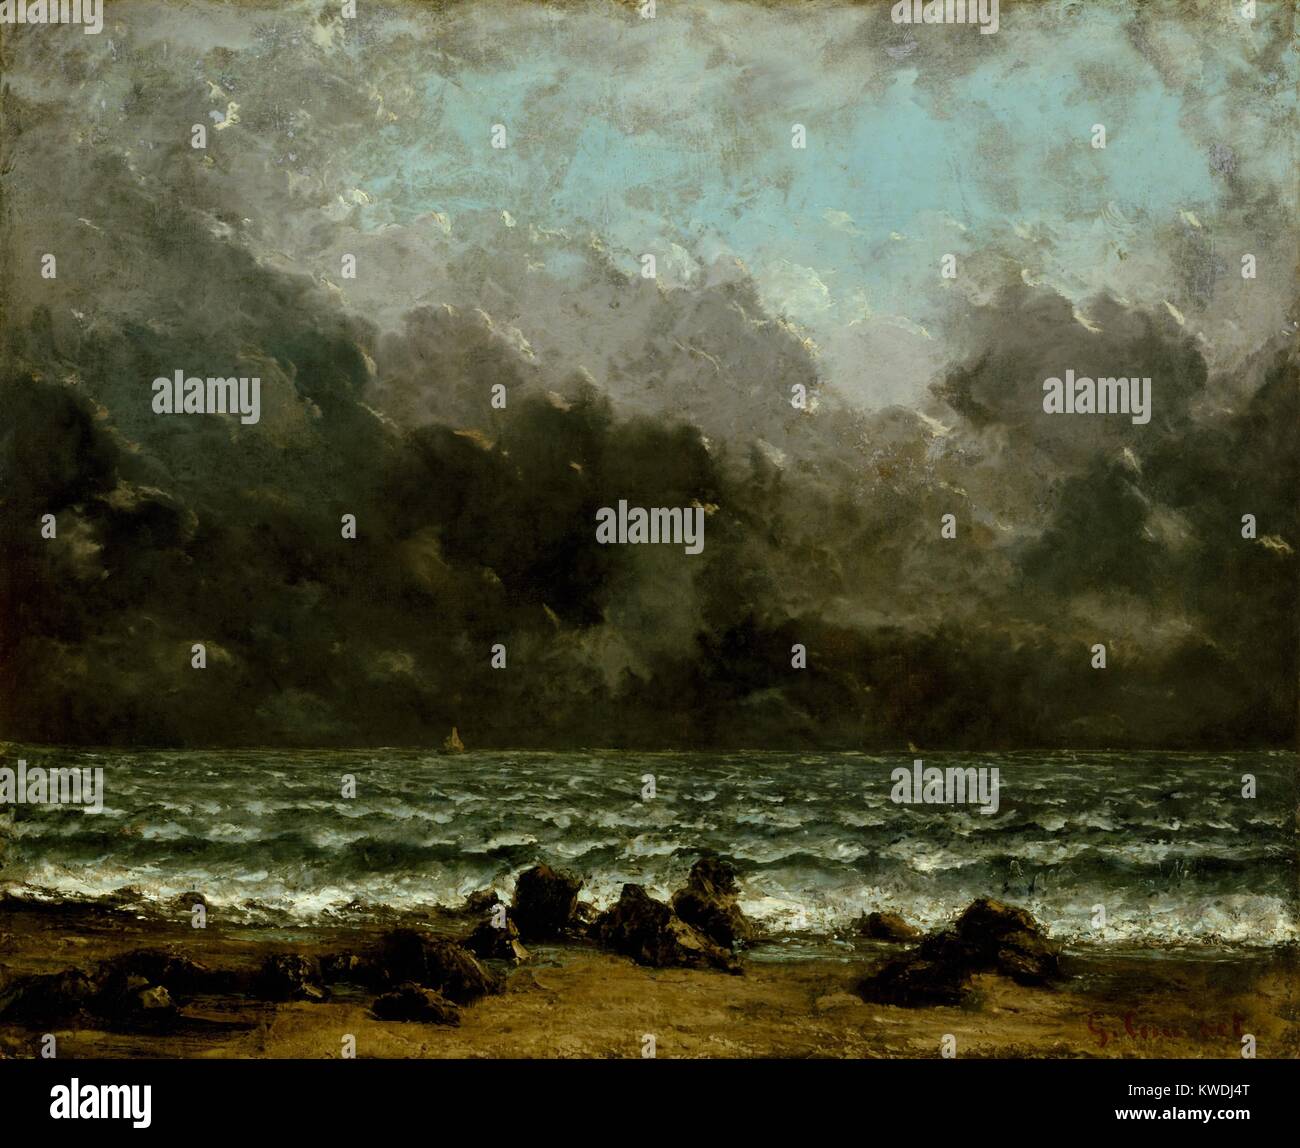 La mer, par Gustave Courbet, 1865, la peinture française, huile sur toile. Courbet créé marins peinte en plein air et dans le studio, tous basés sur son expérience visuelle de divers lumière et météo (BSLOC 2017 9 121) Banque D'Images